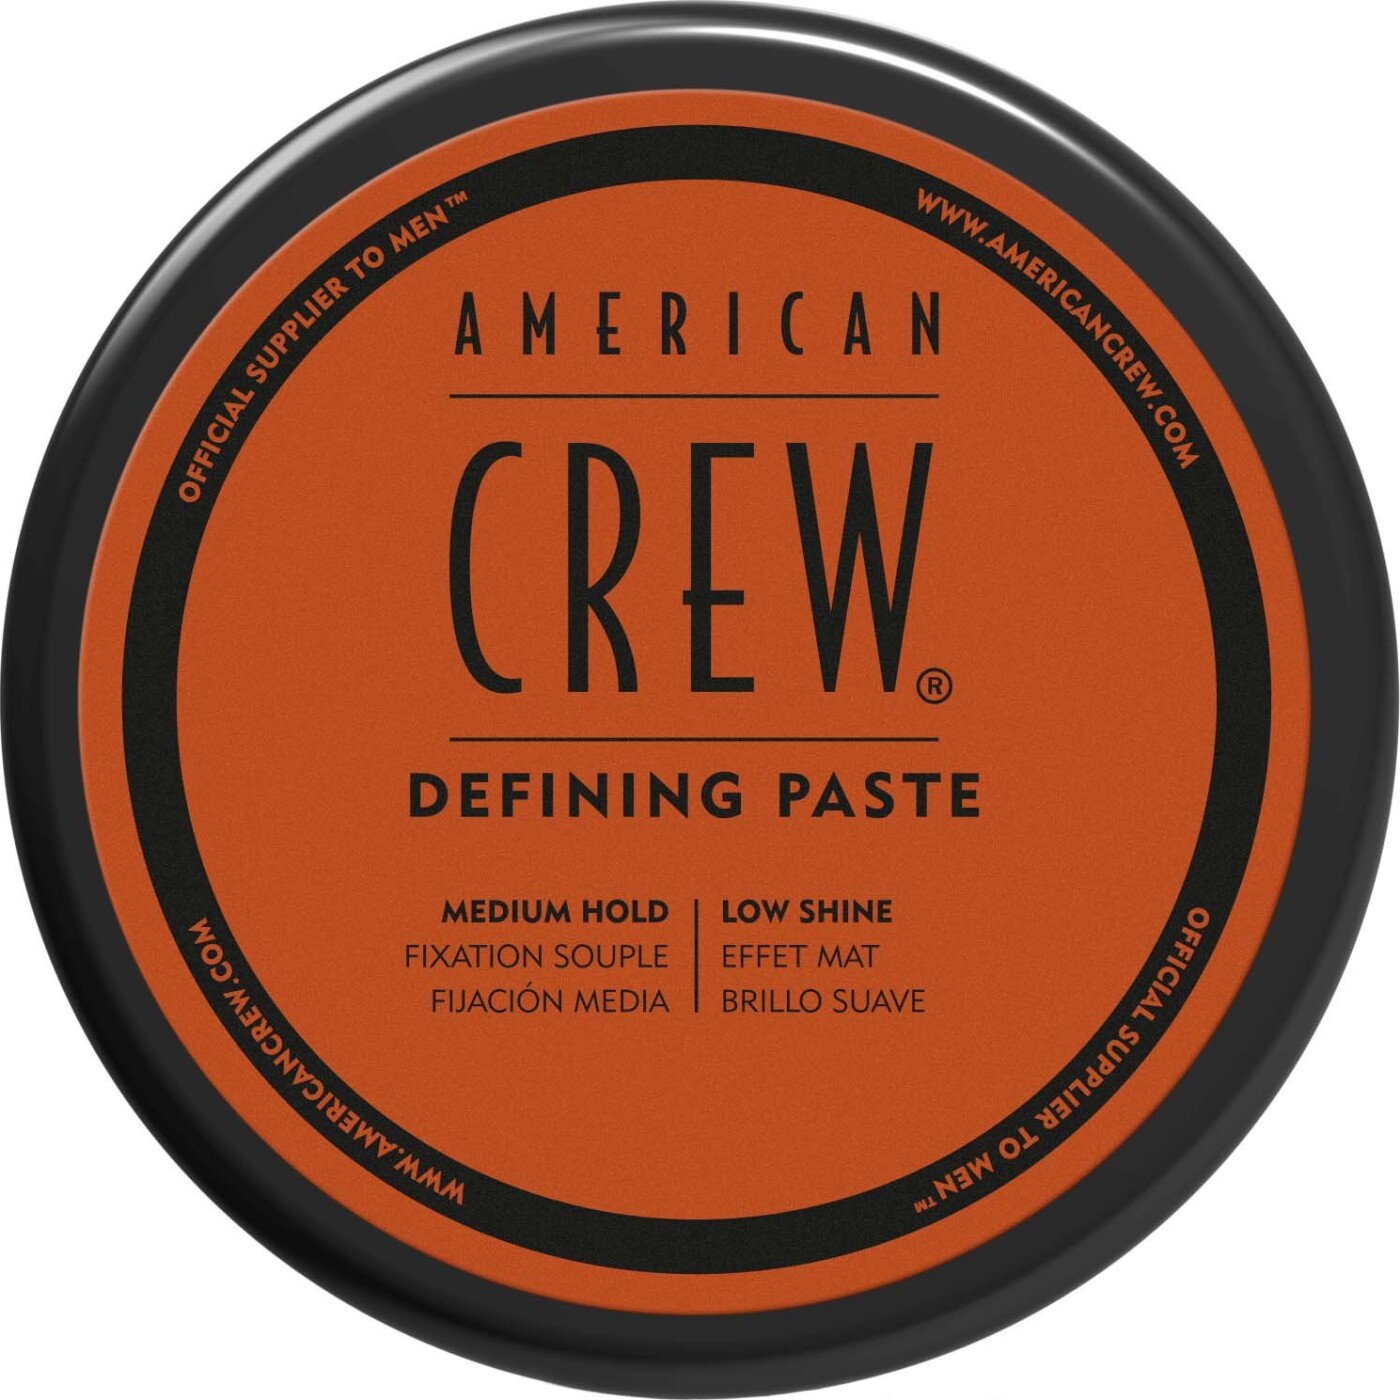 Billede af American Crew - Defining Paste - 85 G